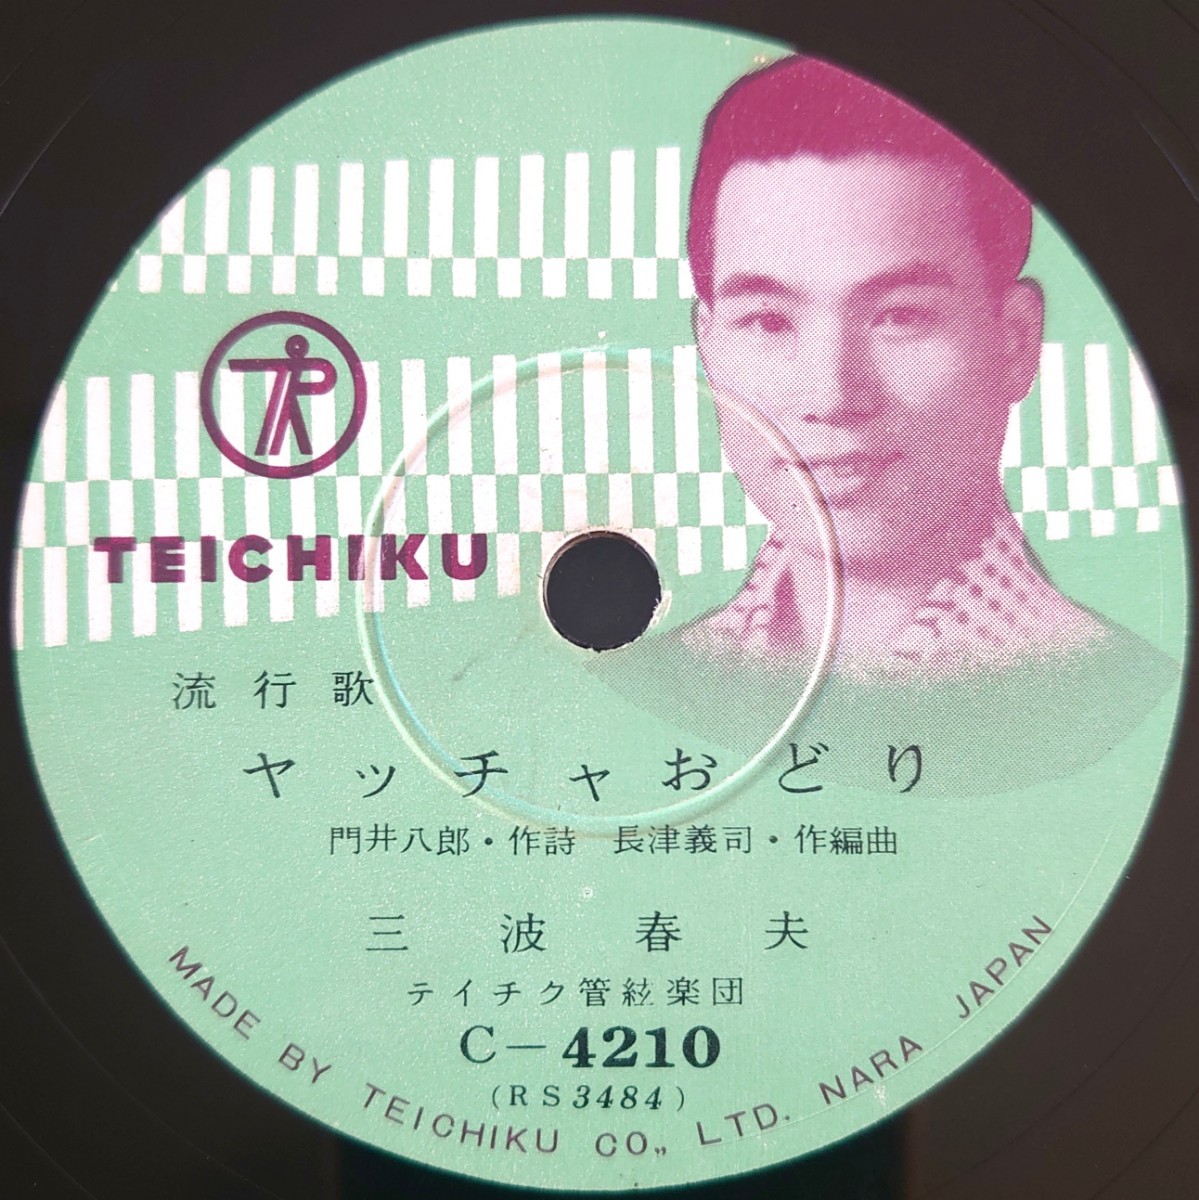 【SP盤レコード】TEICHIKU 流行歌 ヤッチャおどり/トッチャカ人生 三波春夫/SPレコード_画像1